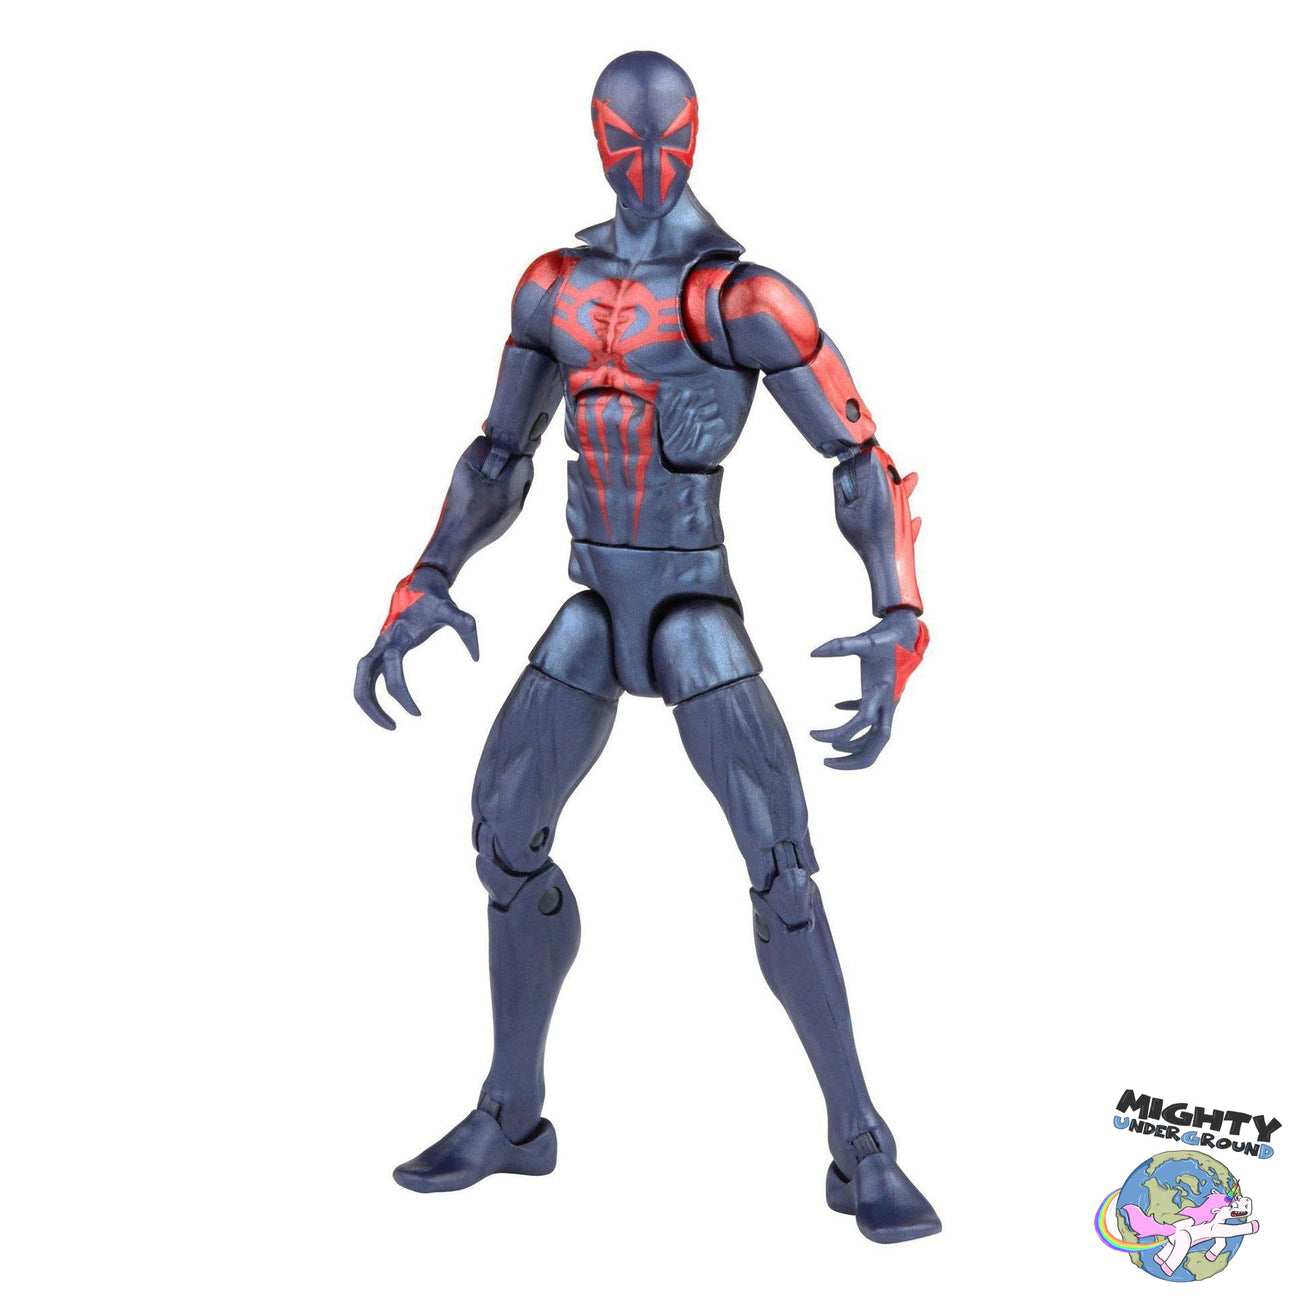 Marvel Legends: Spider-Man 2099 VORBESTELLUNG!-Actionfiguren-Hasbro-Mighty Underground